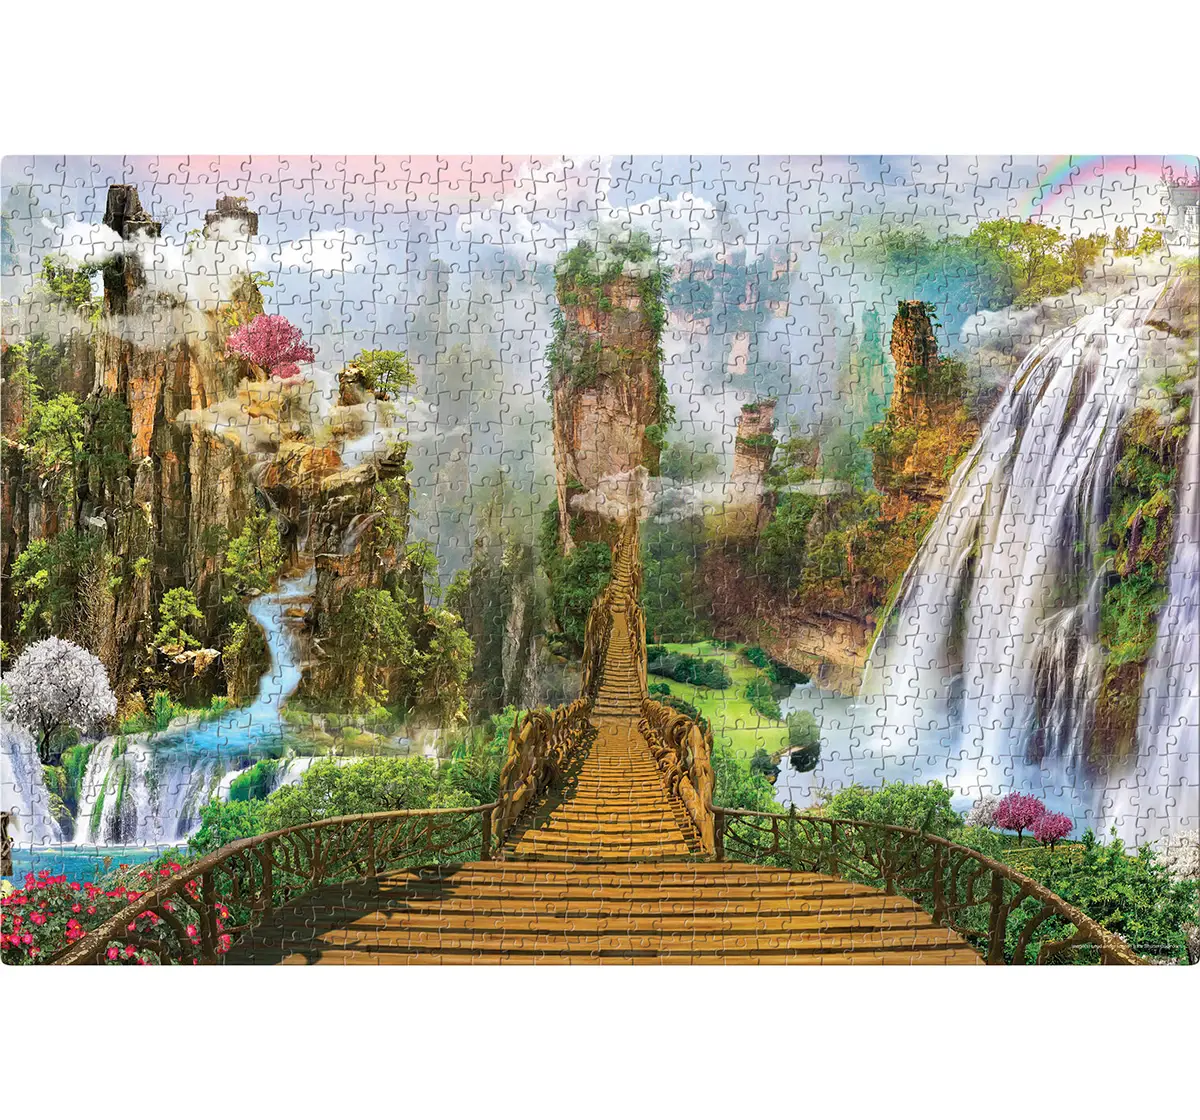 Frank Fantasy Landscape Puzzle 1000 Pieces, 14Y+